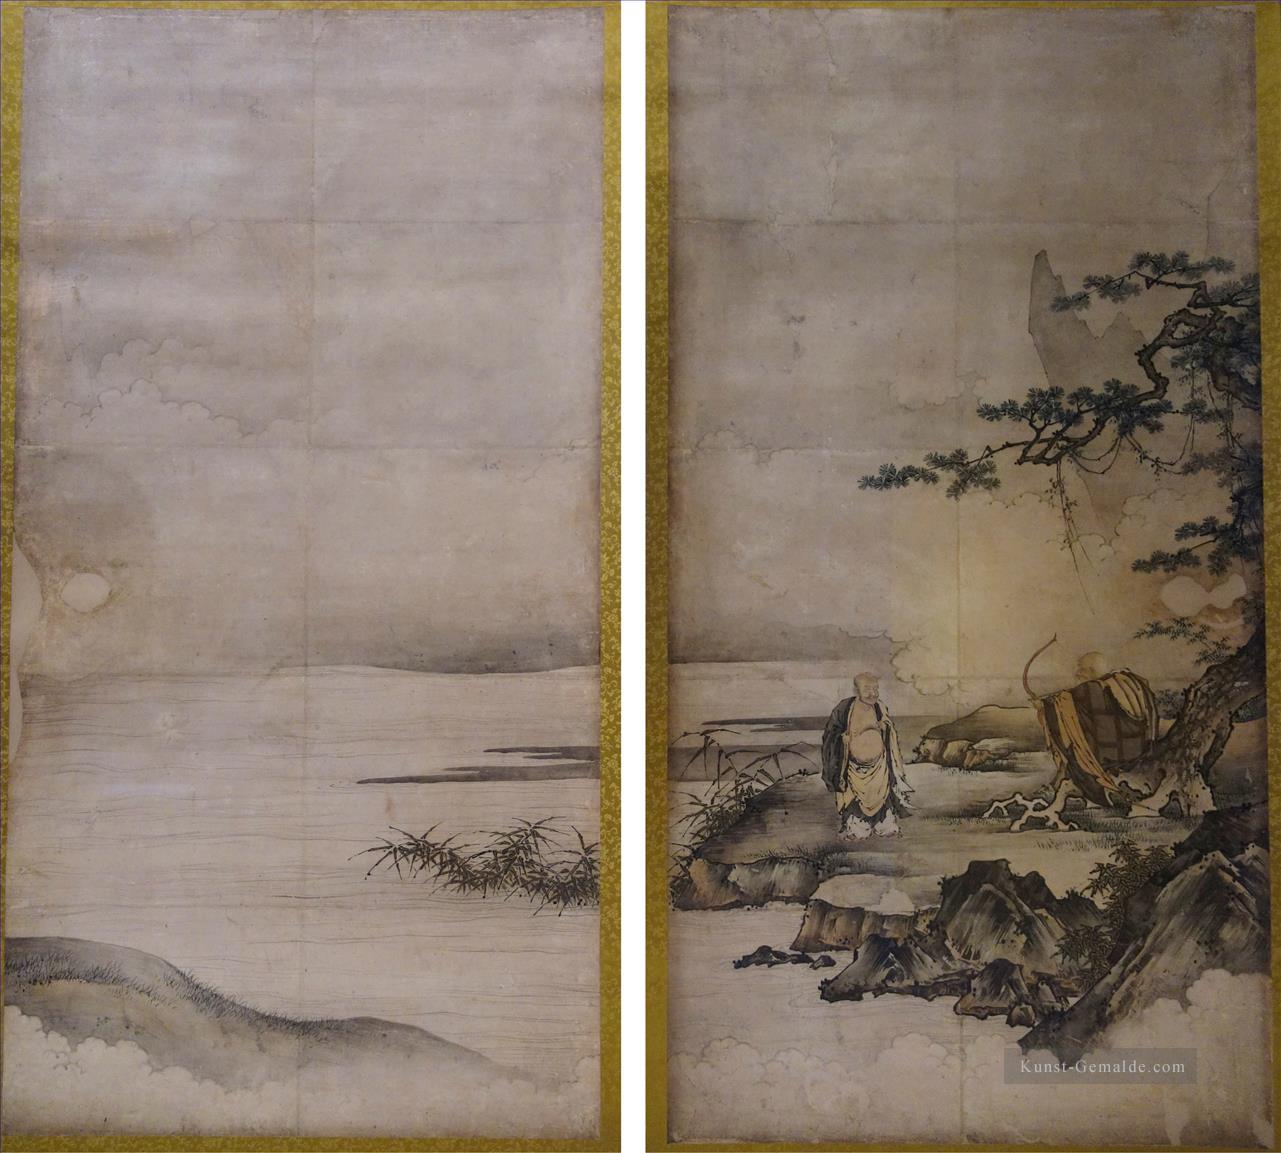 Malerei auf zen Aufklärung sangen Schnäppchen seine Brust und Shigong Dehnung seinen Bogen zugeschrieben Kano Motonobu JapaneseJPG Ölgemälde